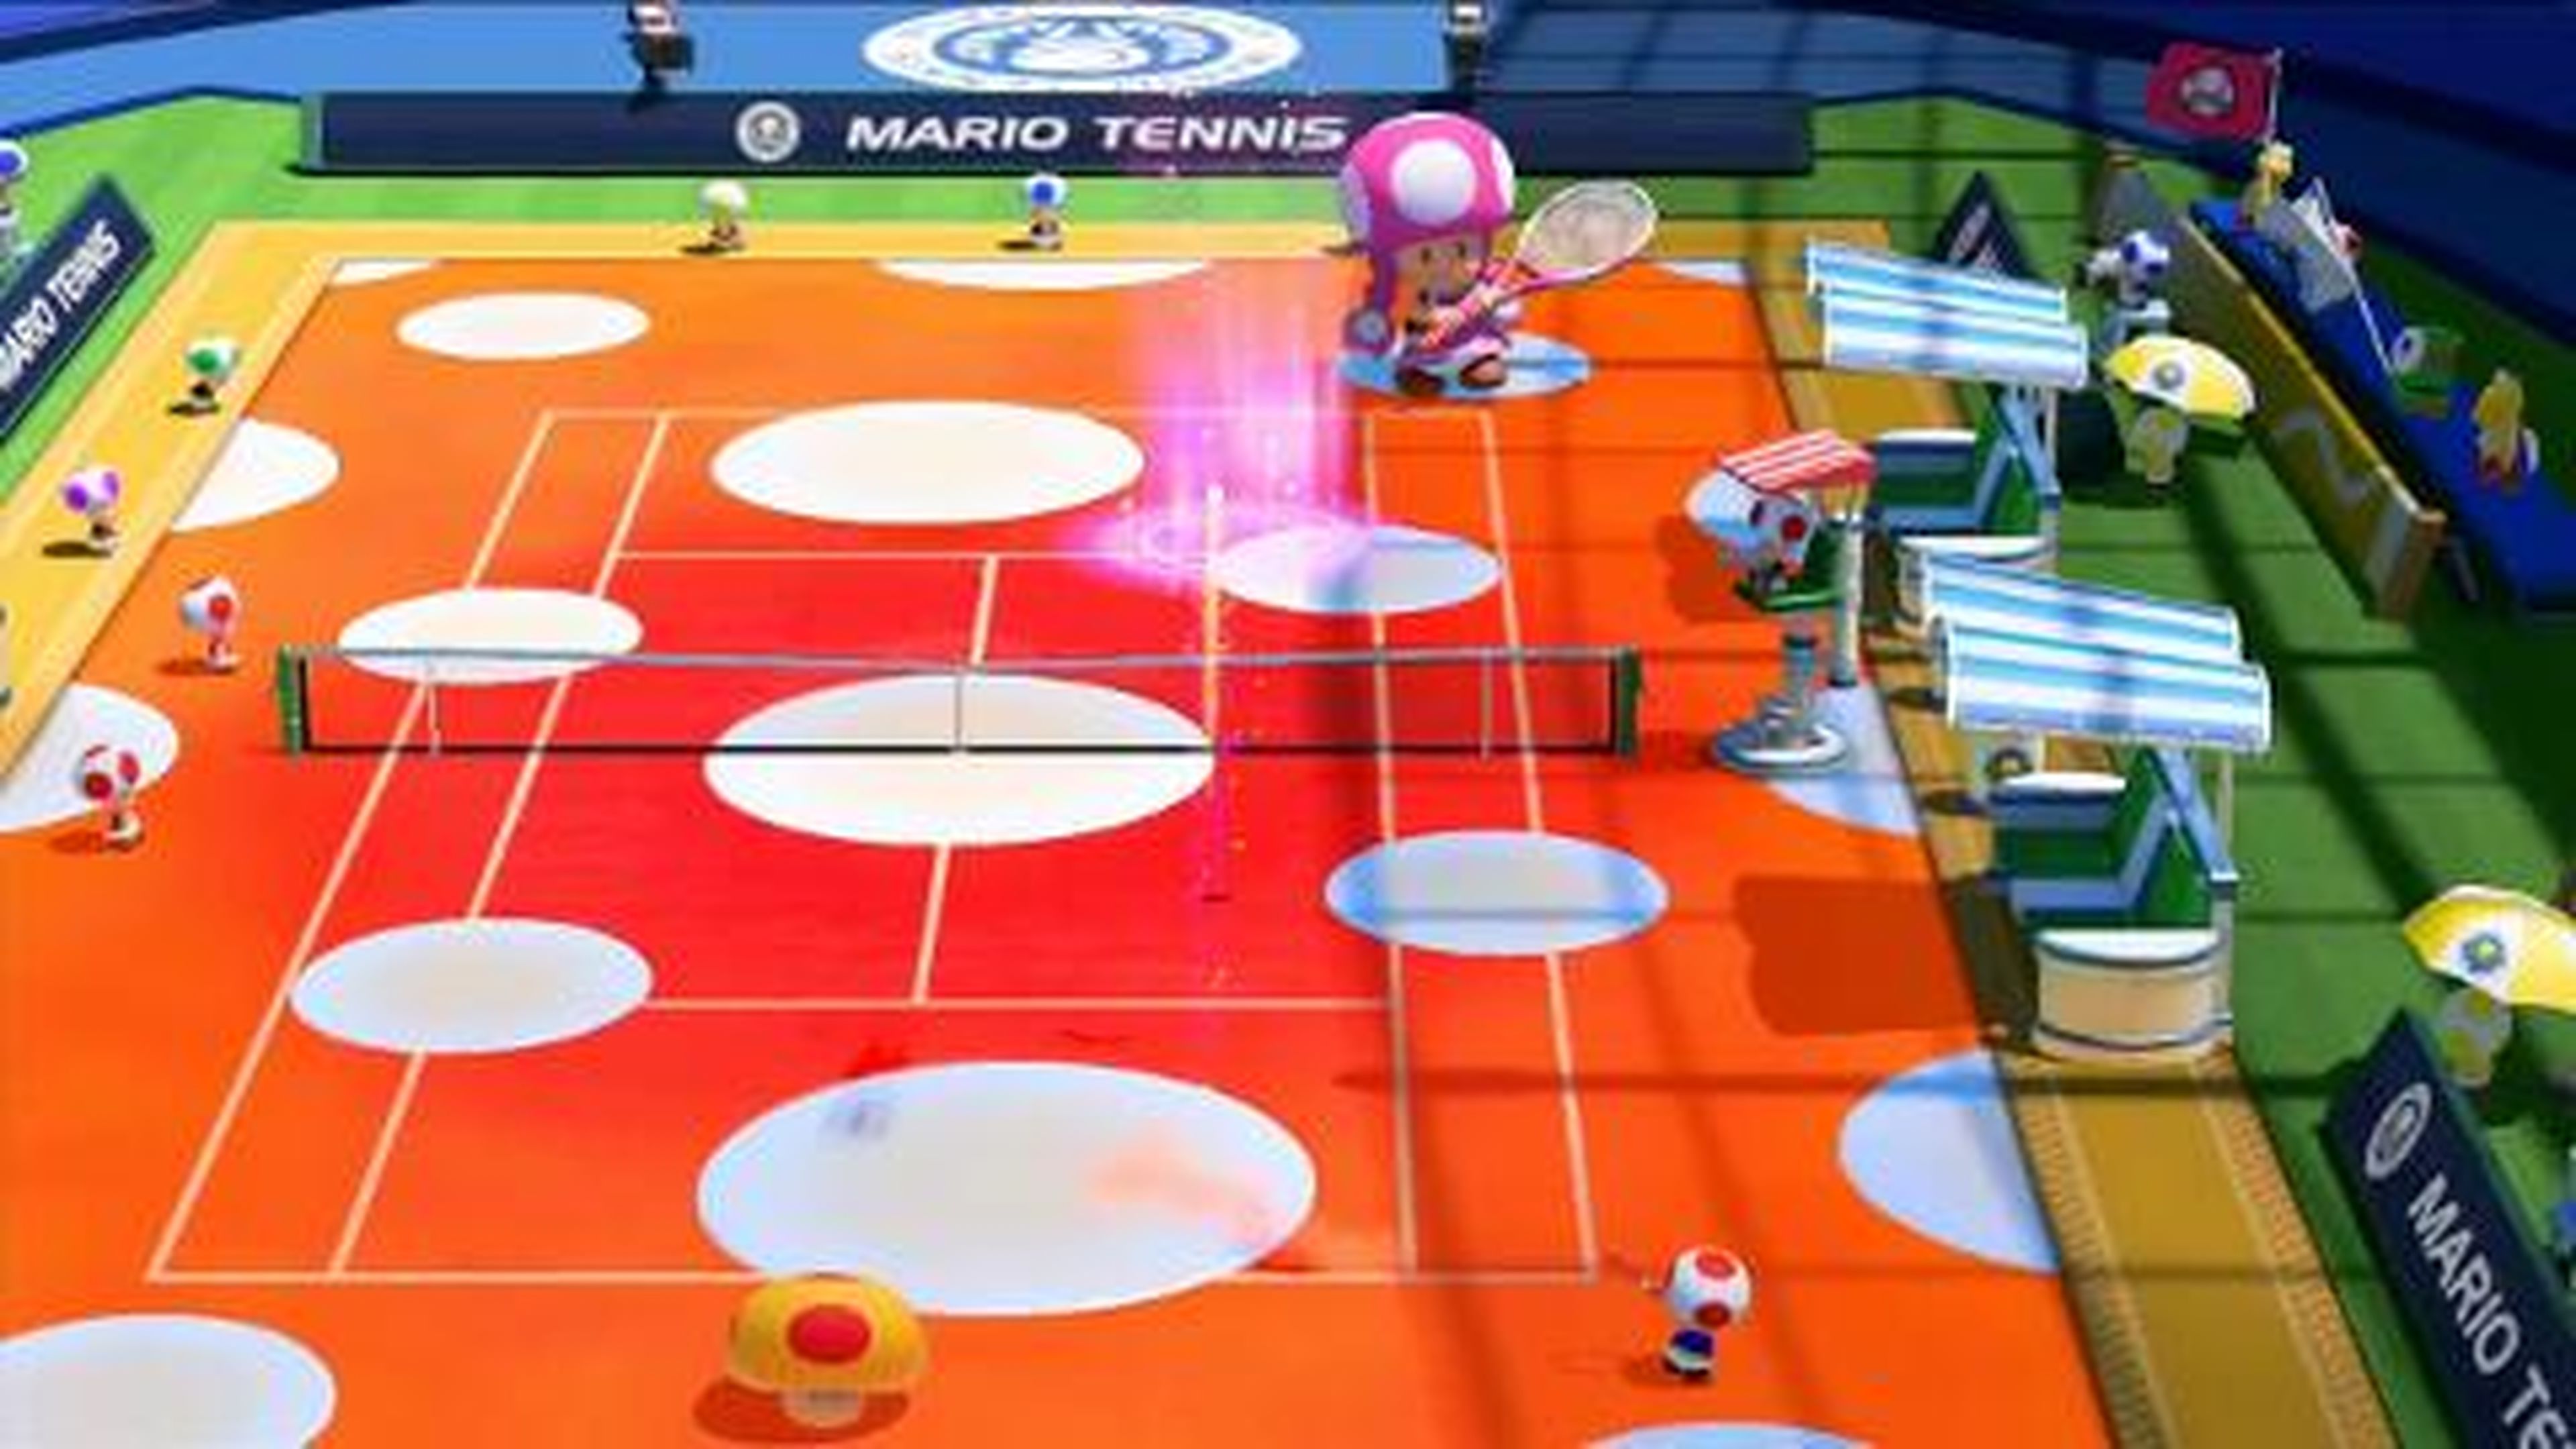 Mario Tennis- Ultra Smash - Toadette entra en la cancha (Wii U)